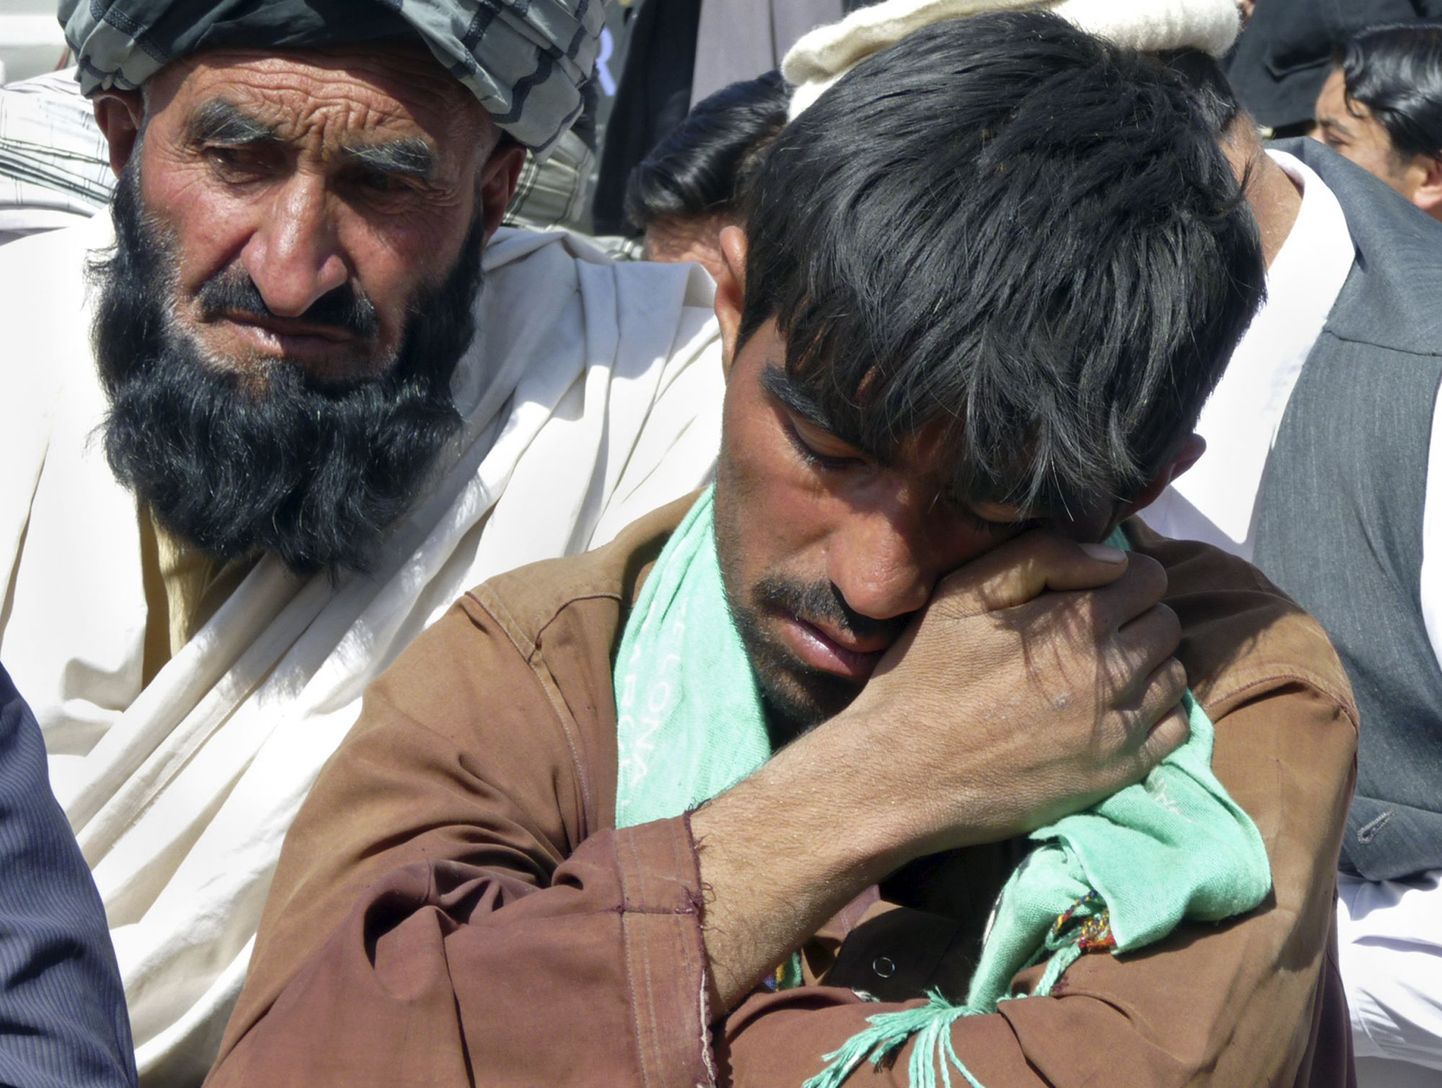 Pühapäevases rünnakus lähedase kaotanud leinavad afgaani mehed.